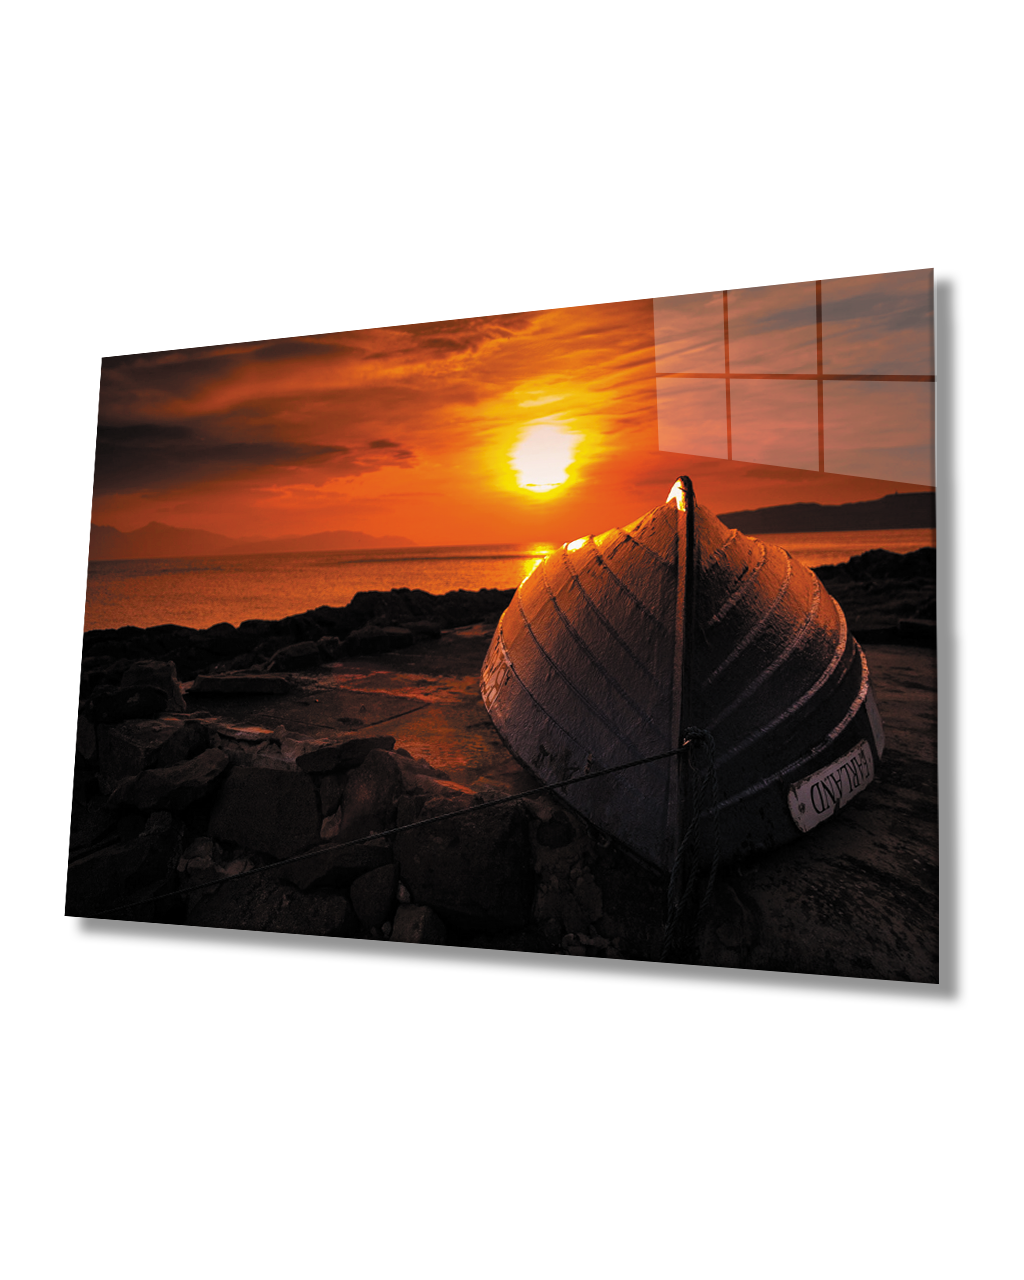 Gün Batımı Kayık  Manzaralı Cam Tablo  4mm Dayanıklı Temperli Cam Sunset Kayak View Glass Table 4mm Durable Tempered Glass